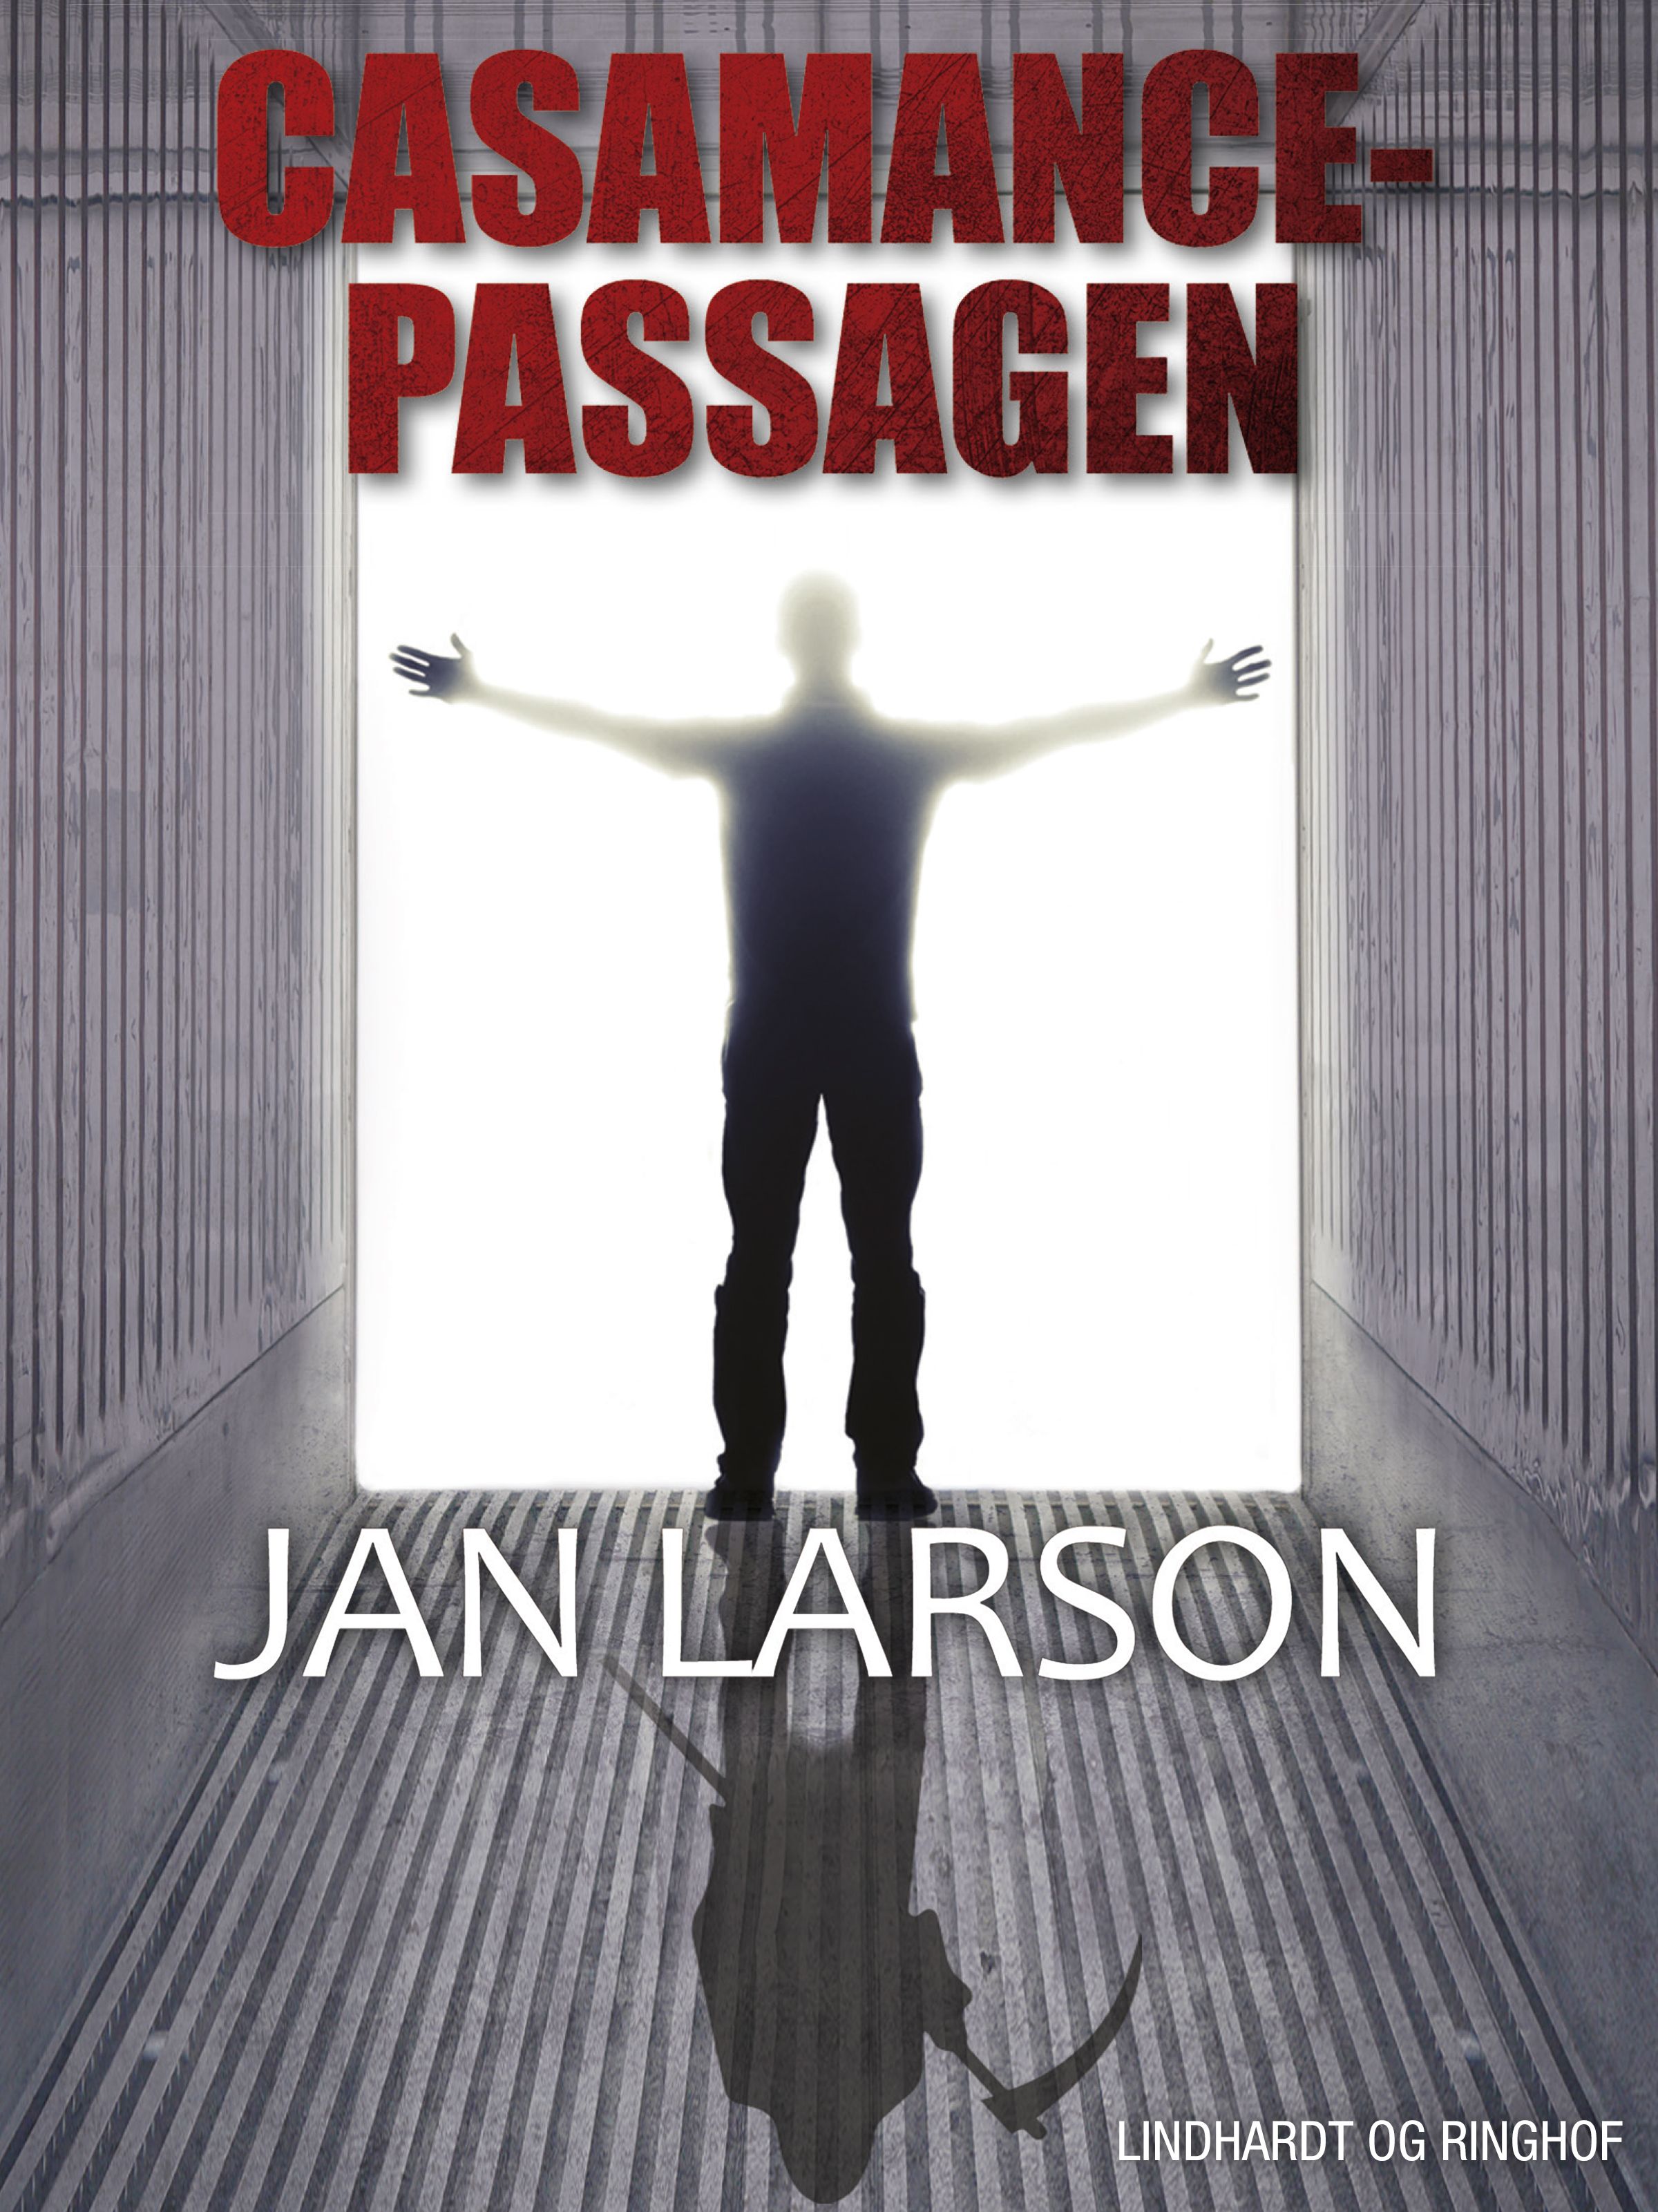 Casamance-passagen, e-bog af Jan Larson